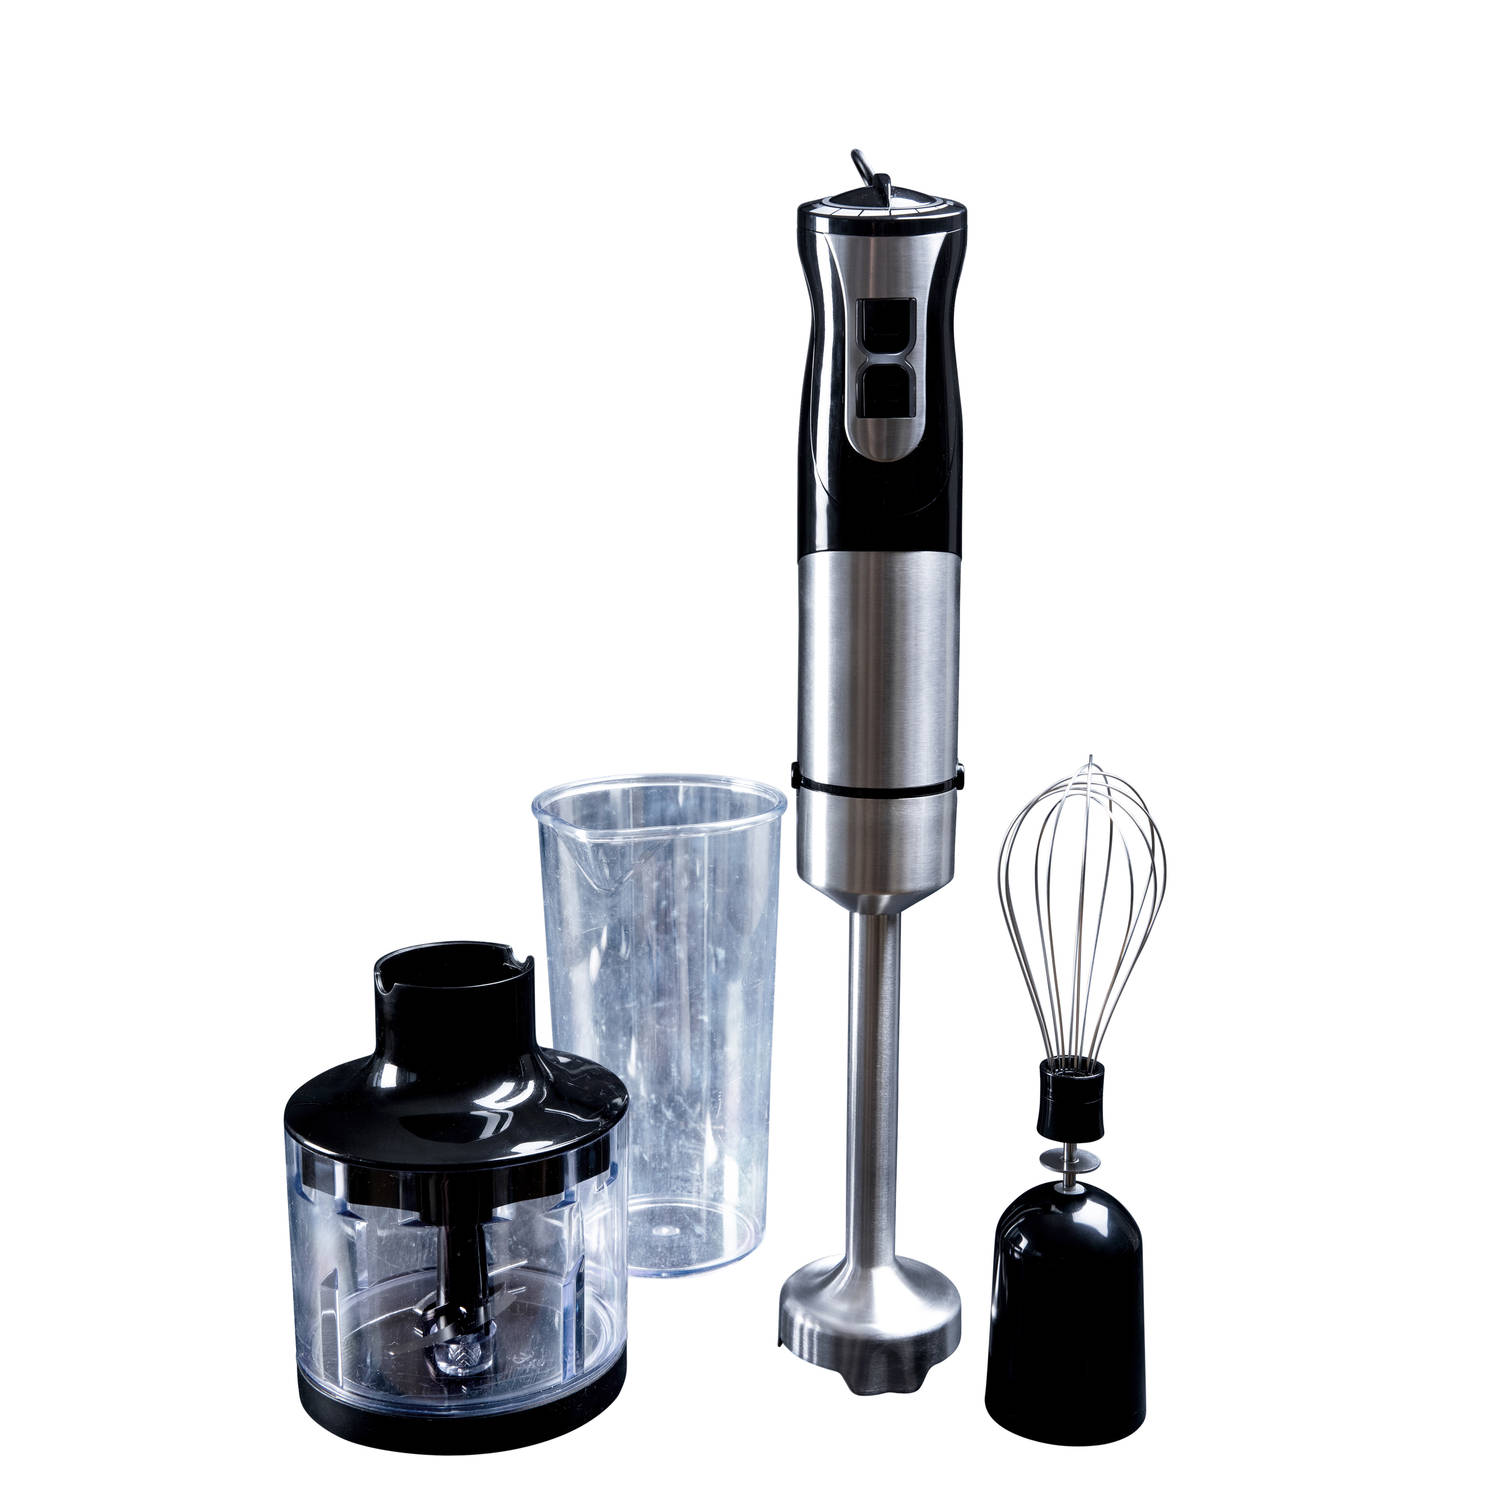 Staafmixer met hakmolen-schijf-kop voor multifunctioneel gebruik in jouw keuken Gastronoma RVS-Zwart